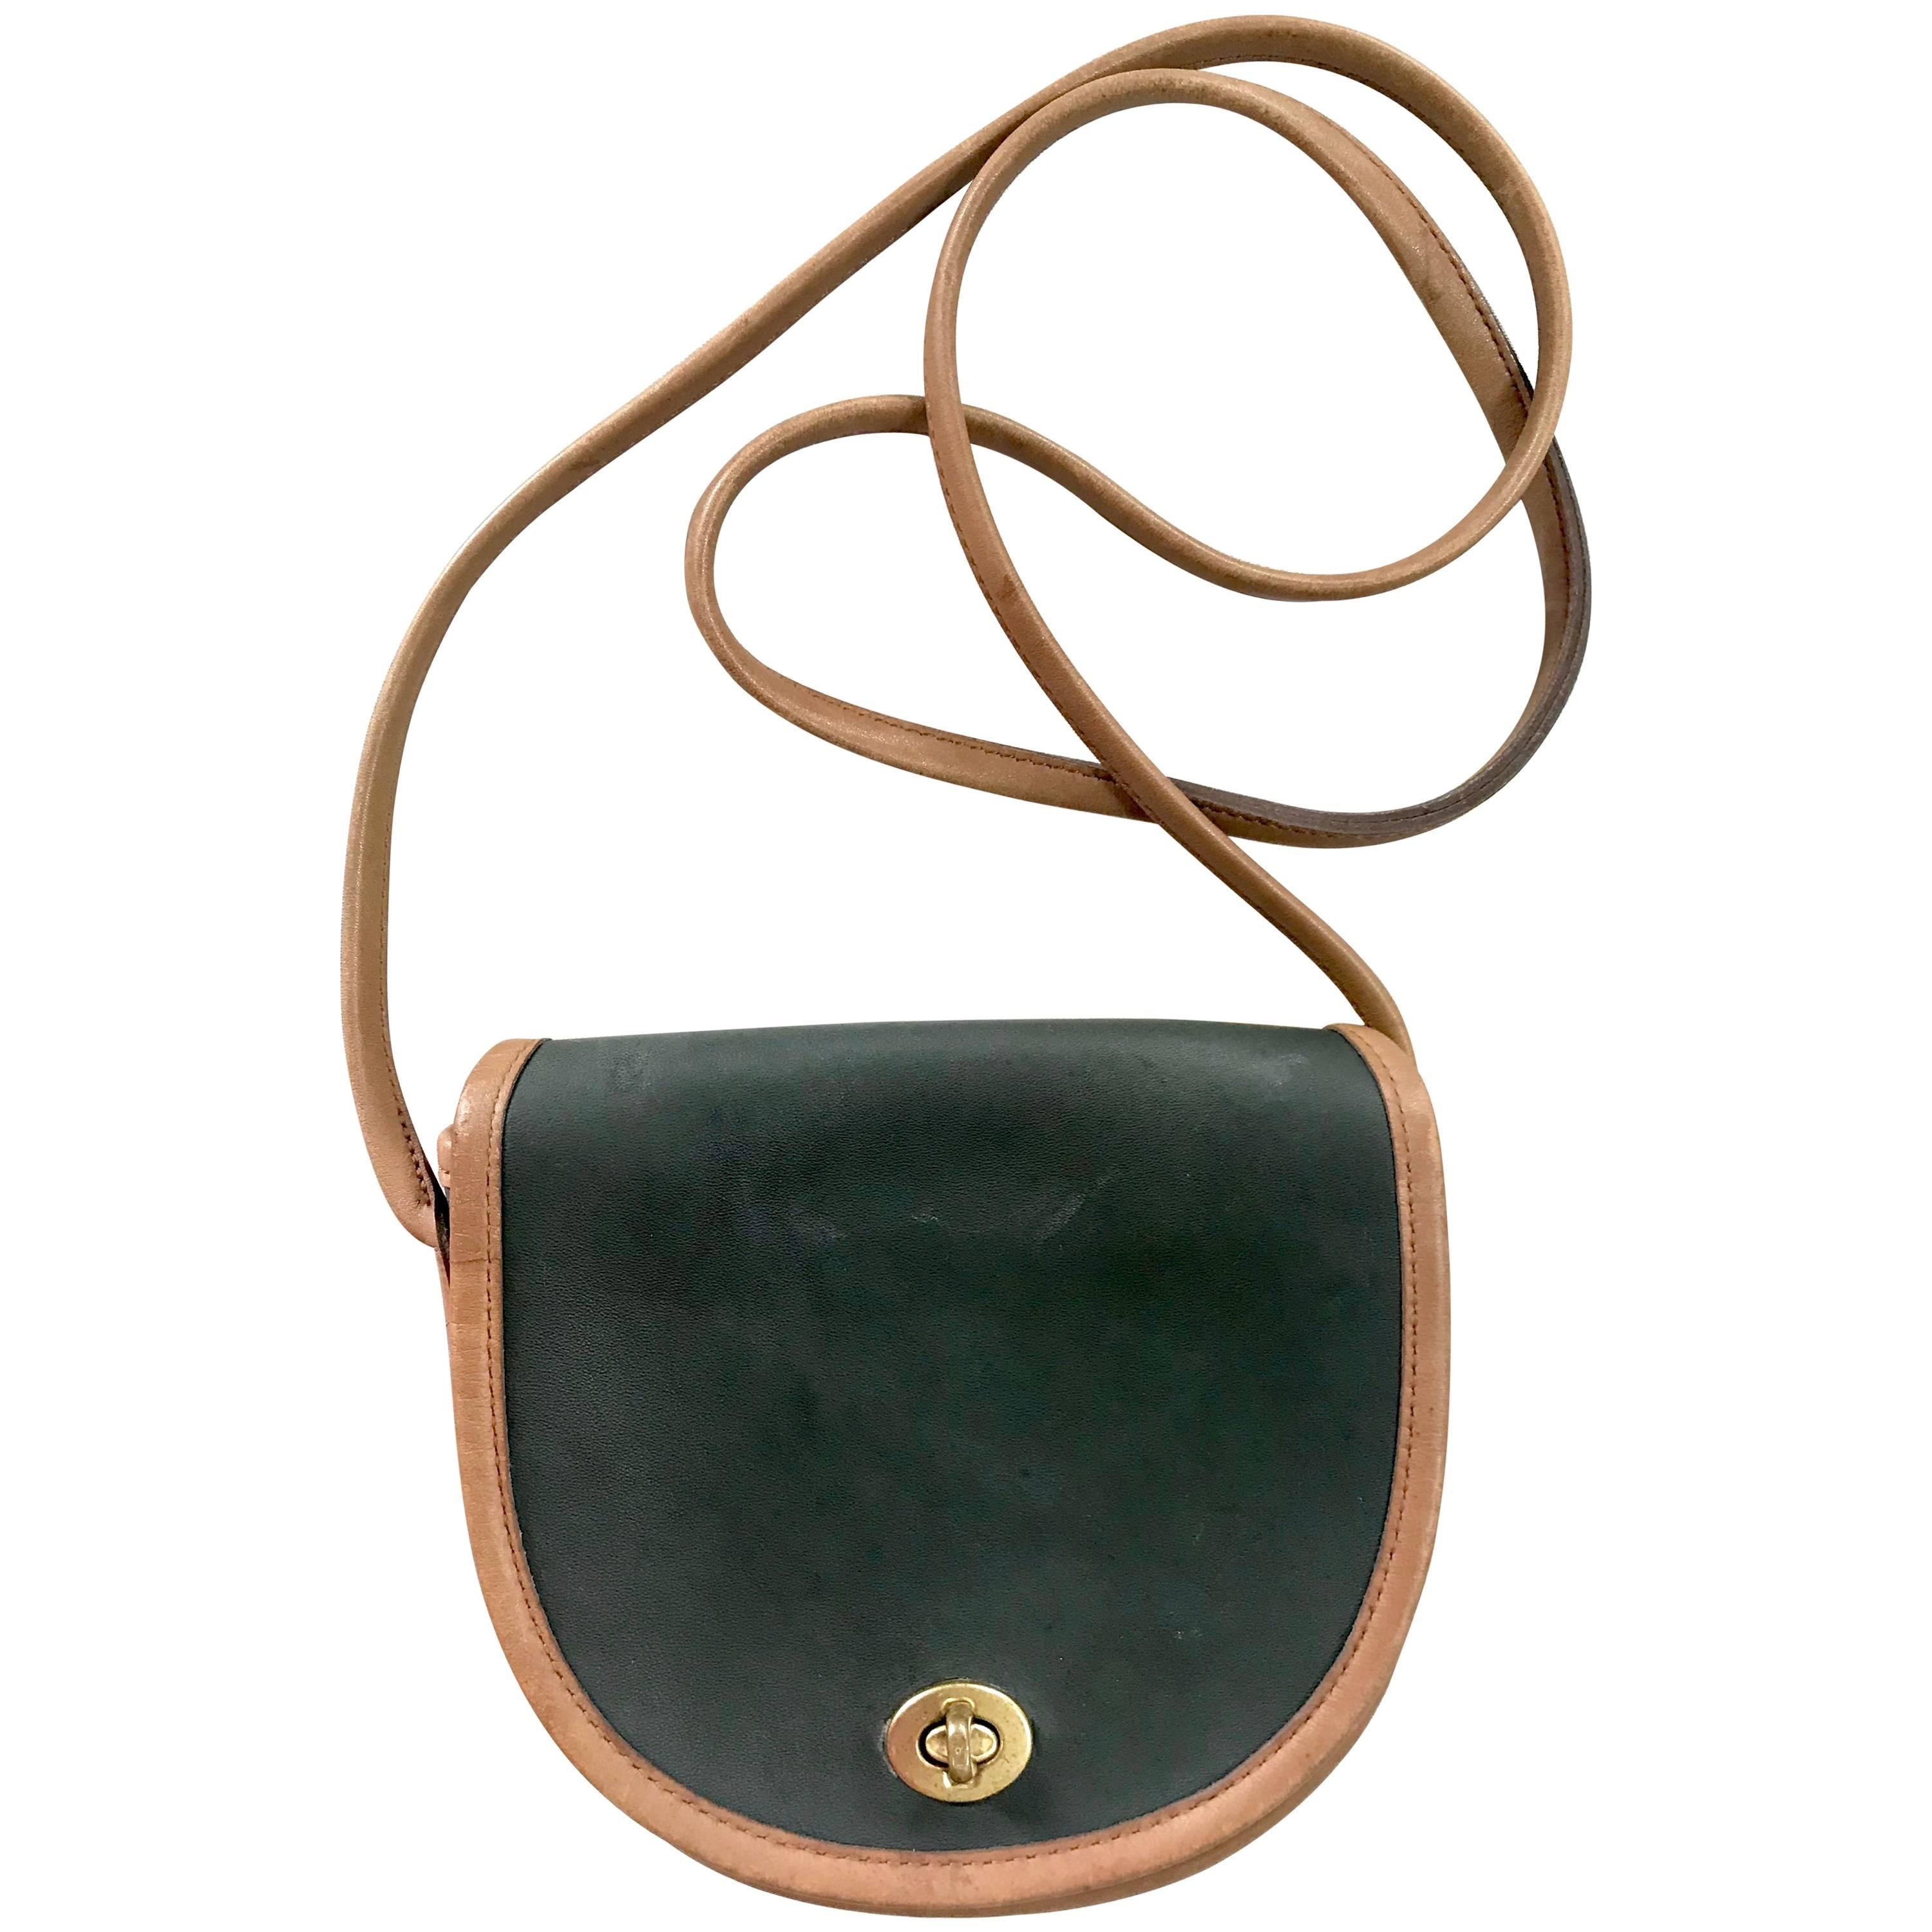 Vintage COACH genuine brown leather mini shoulder bag vertical